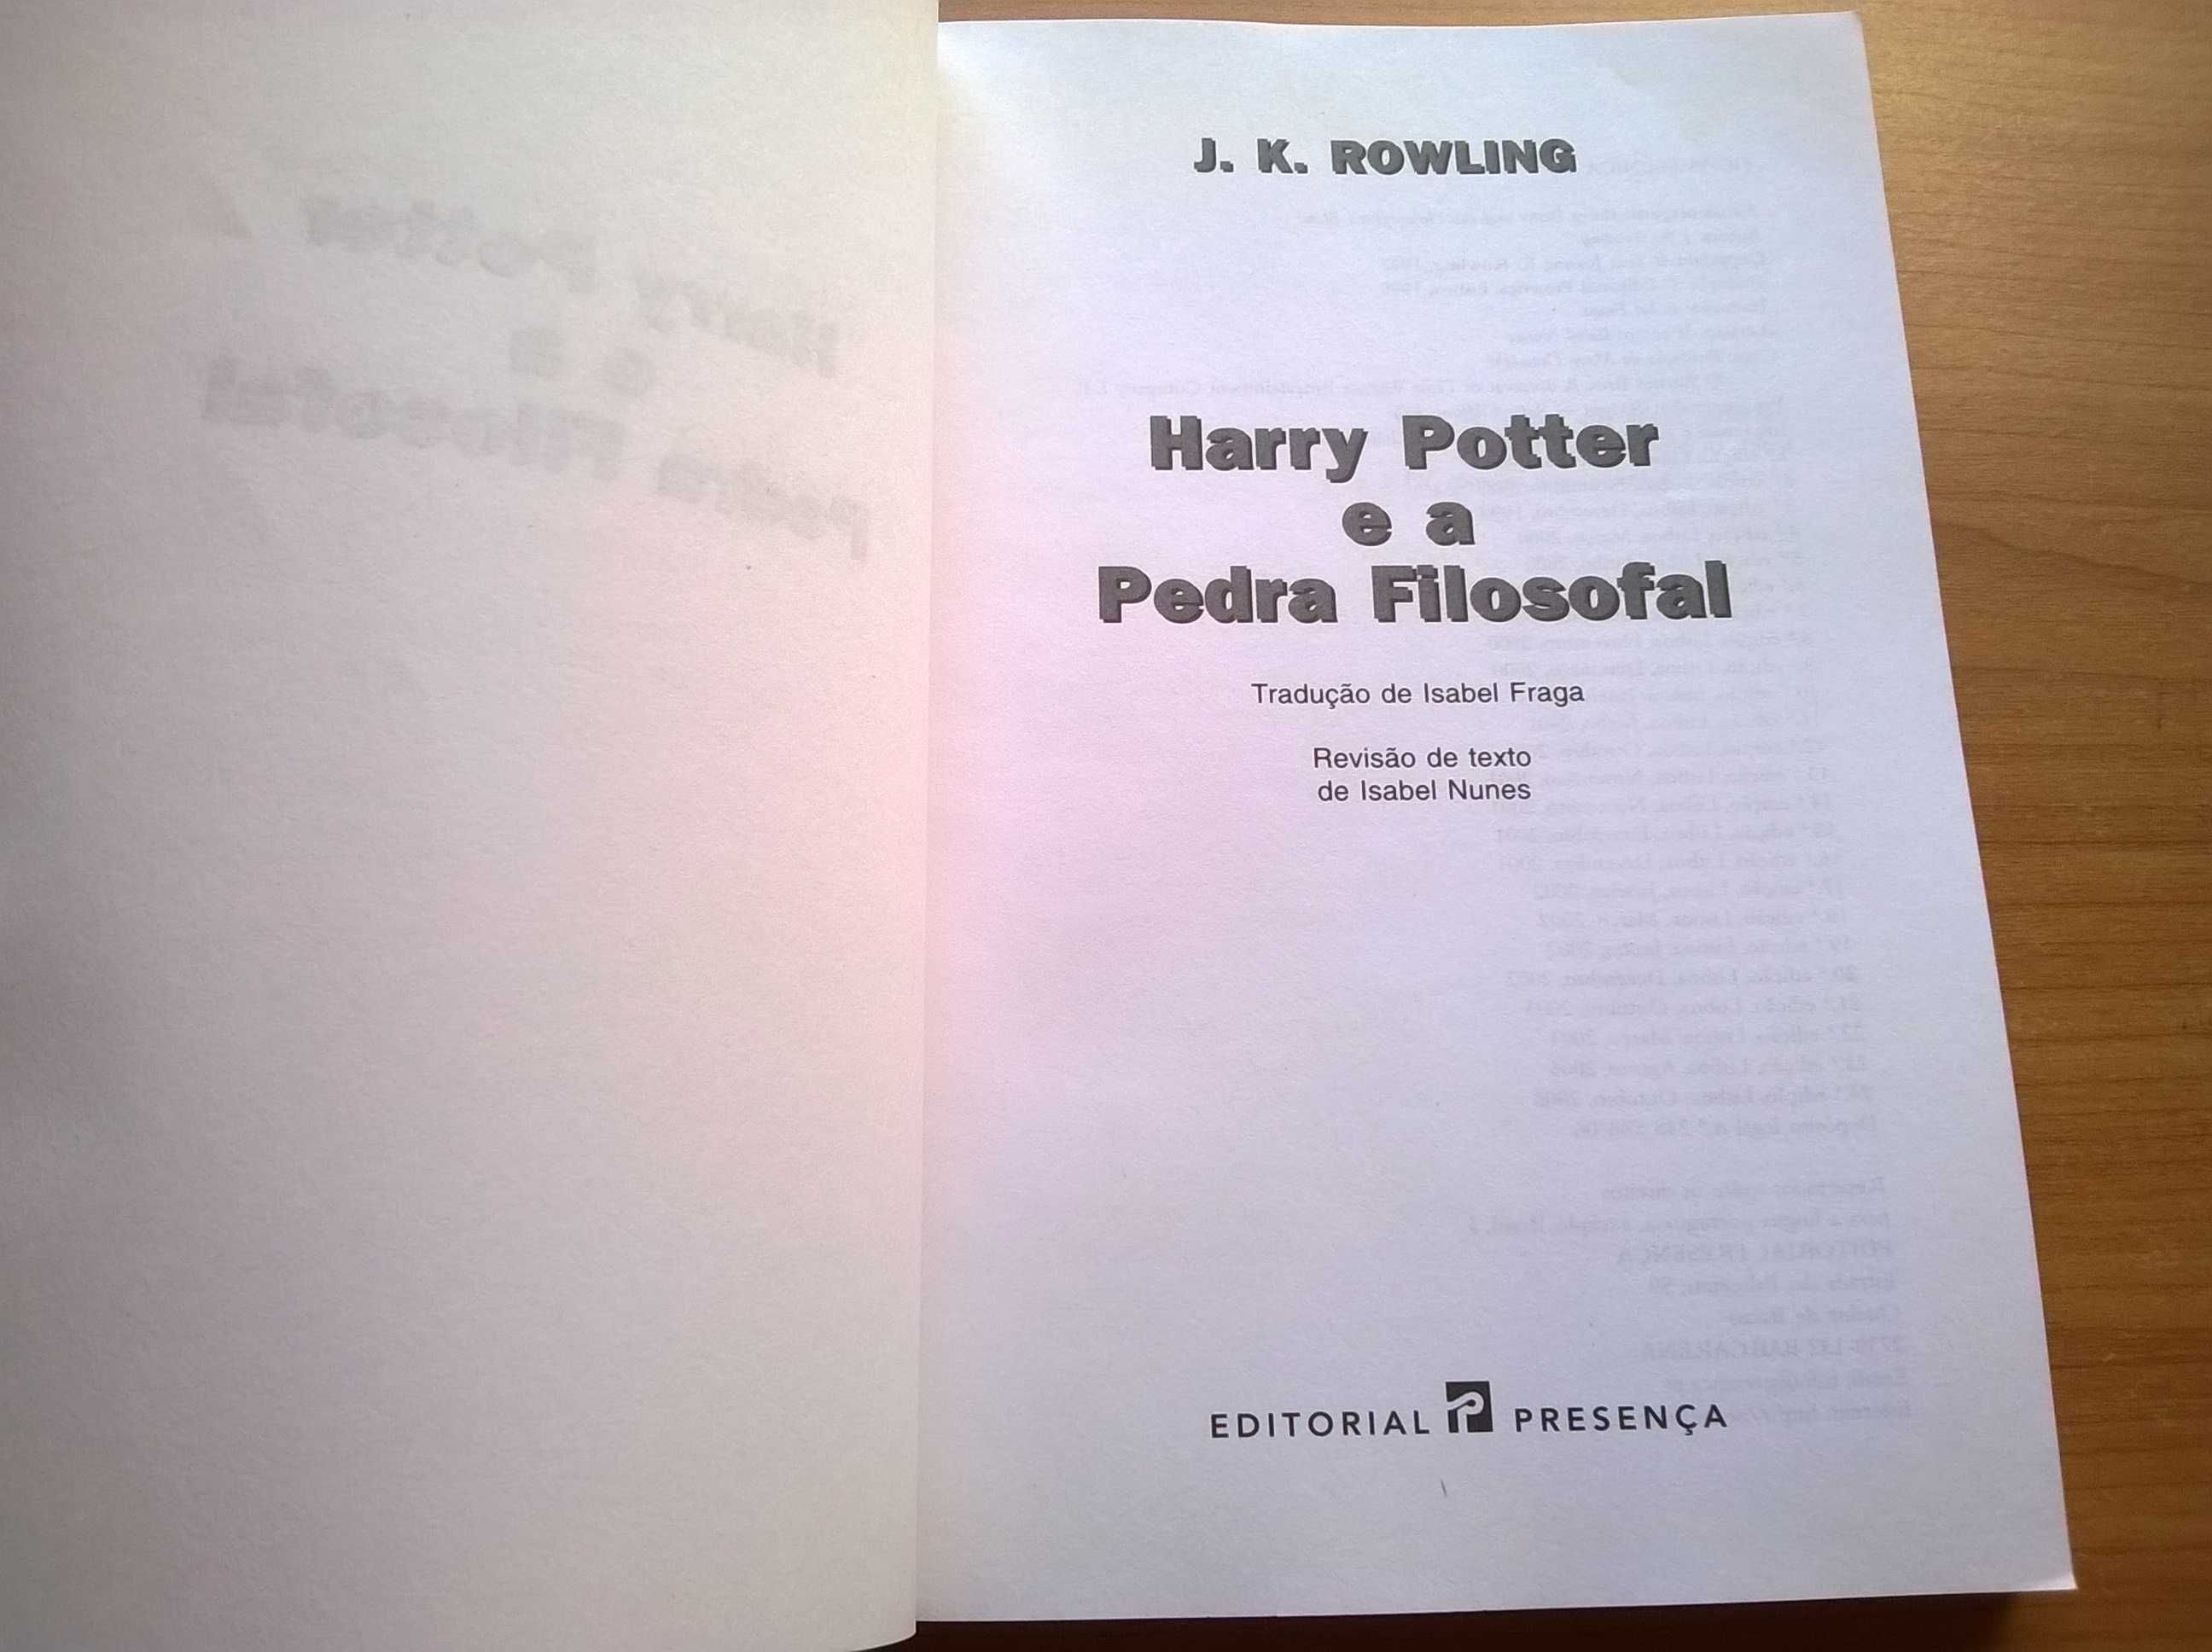 Harry Potter e a Pedra Filosofal - J. K. Rowling (portes grátis)